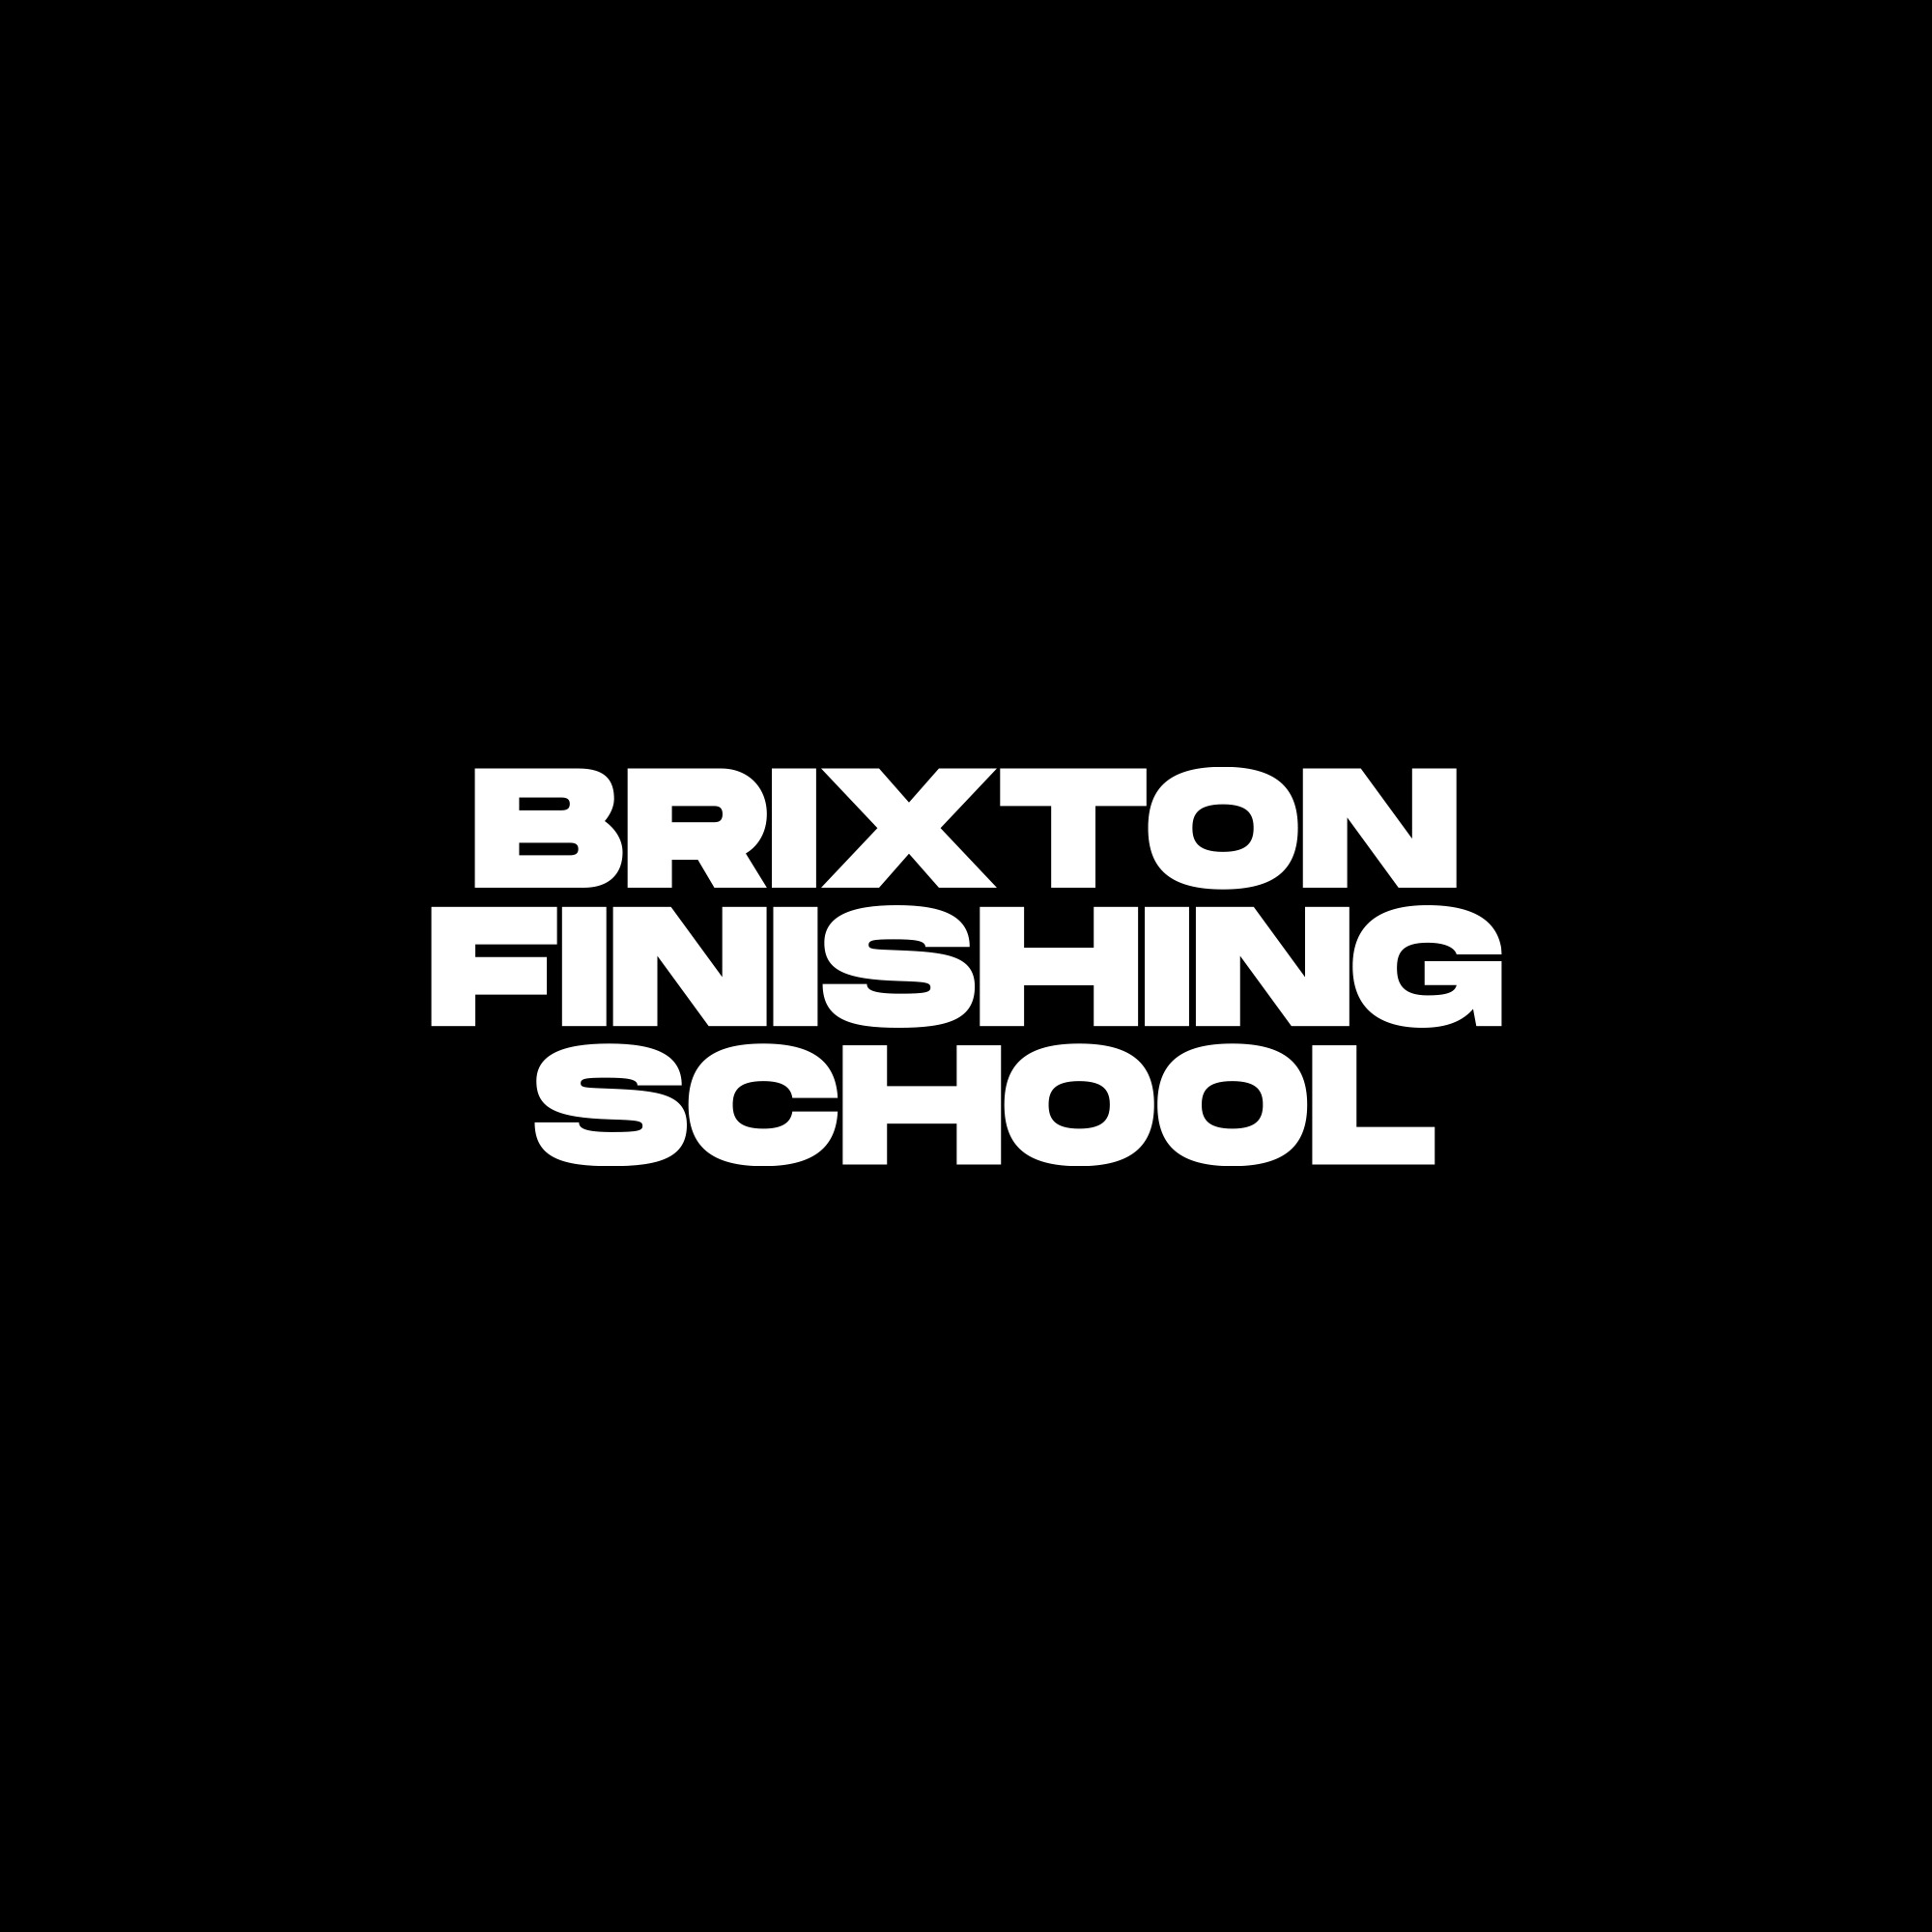 Brixton_Finishing_School_Black_2-1